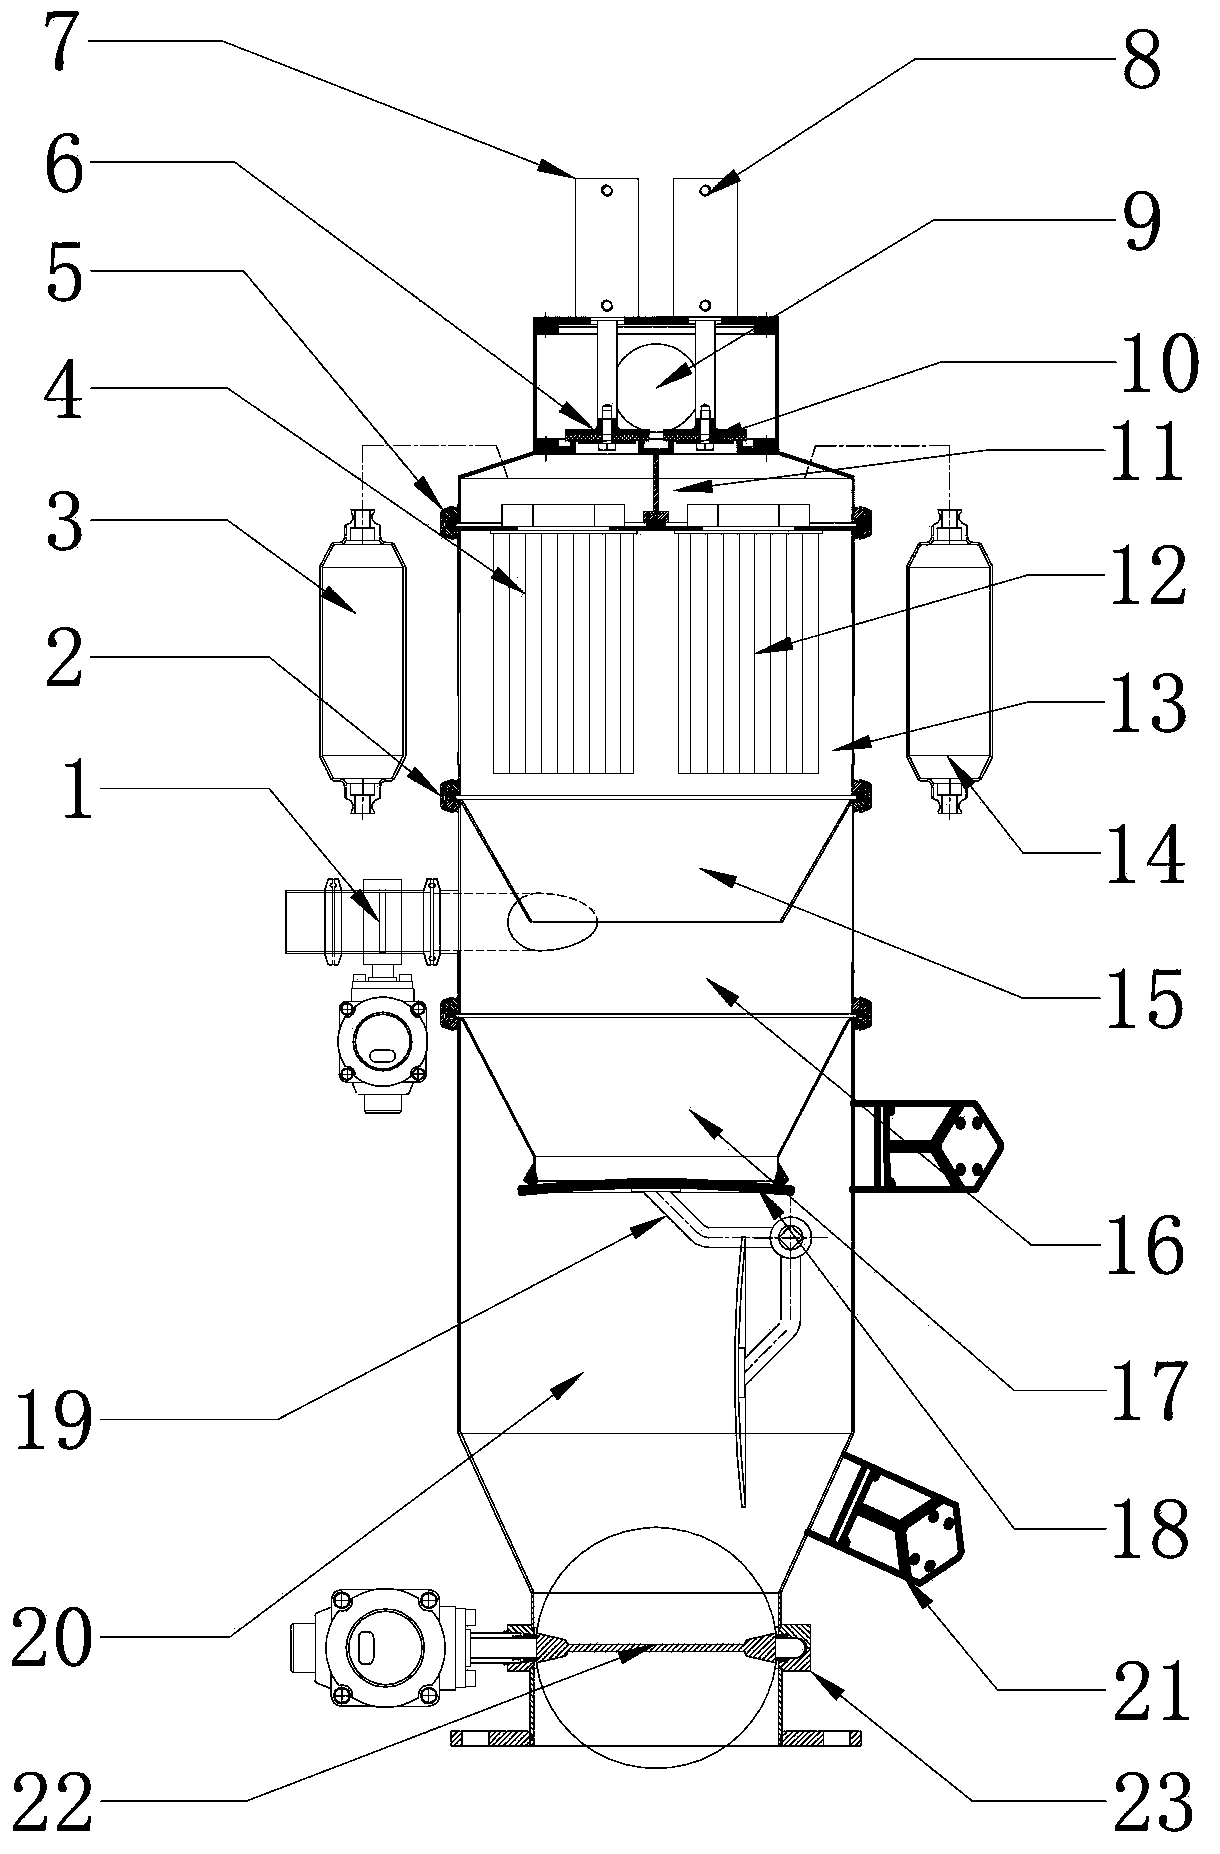 Gap-discharging continuous vacuum feeding machine